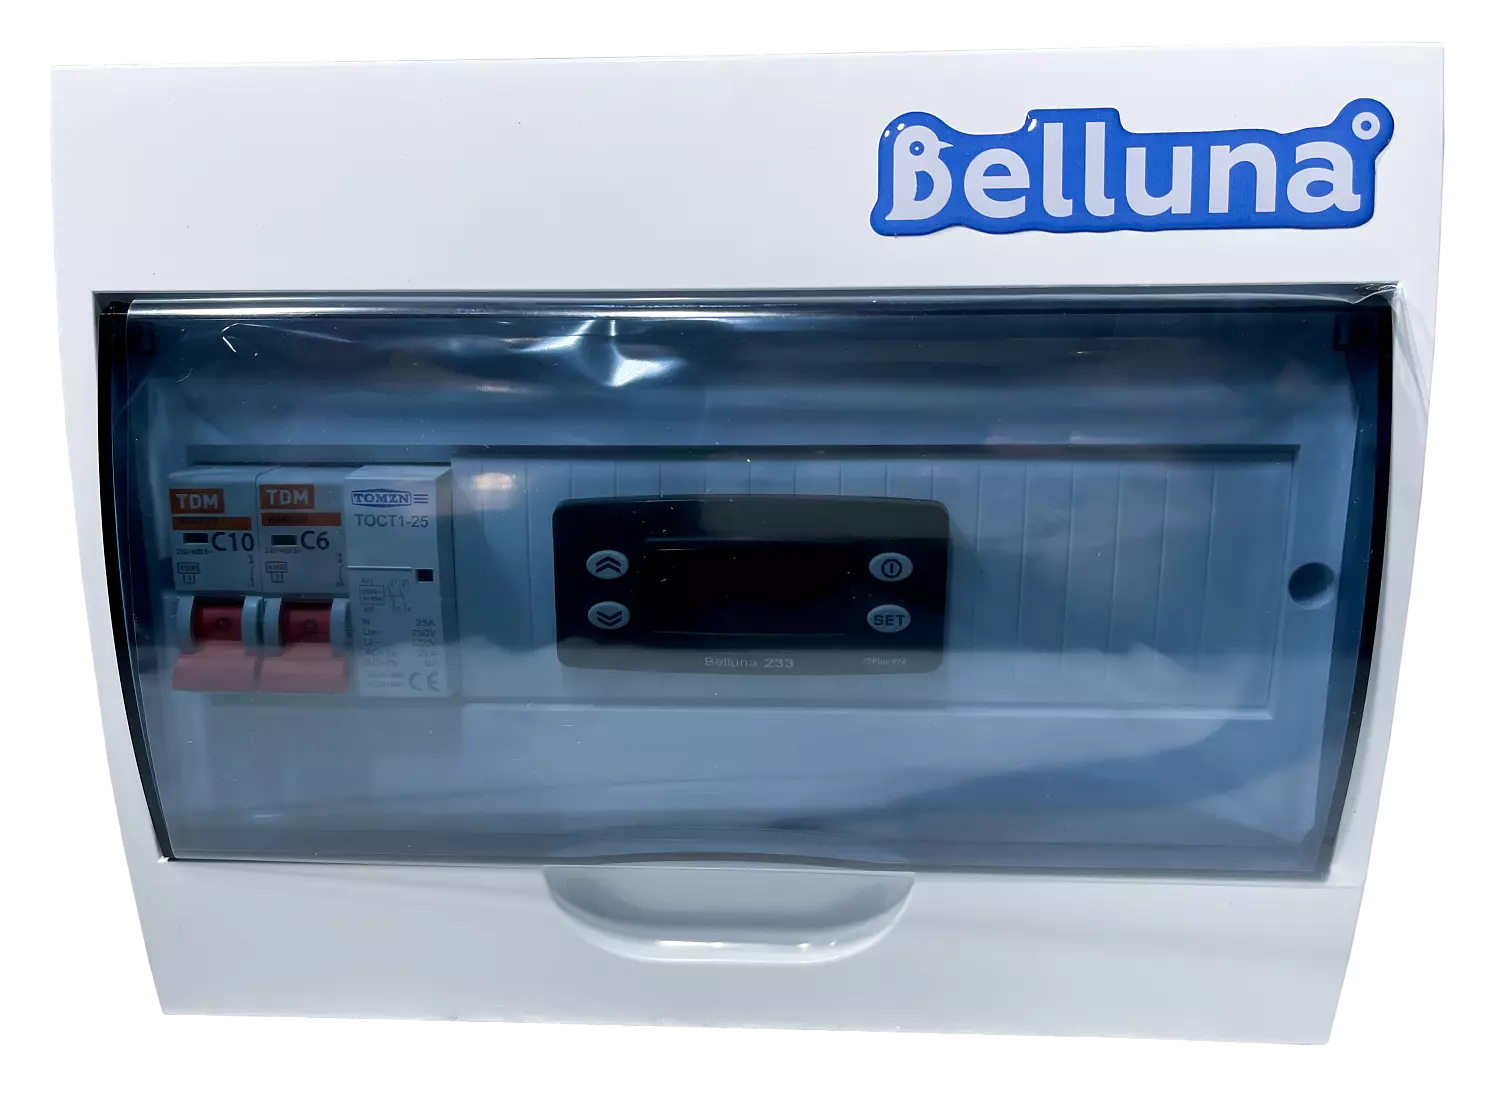 сплит-система Belluna S115 Тамбов